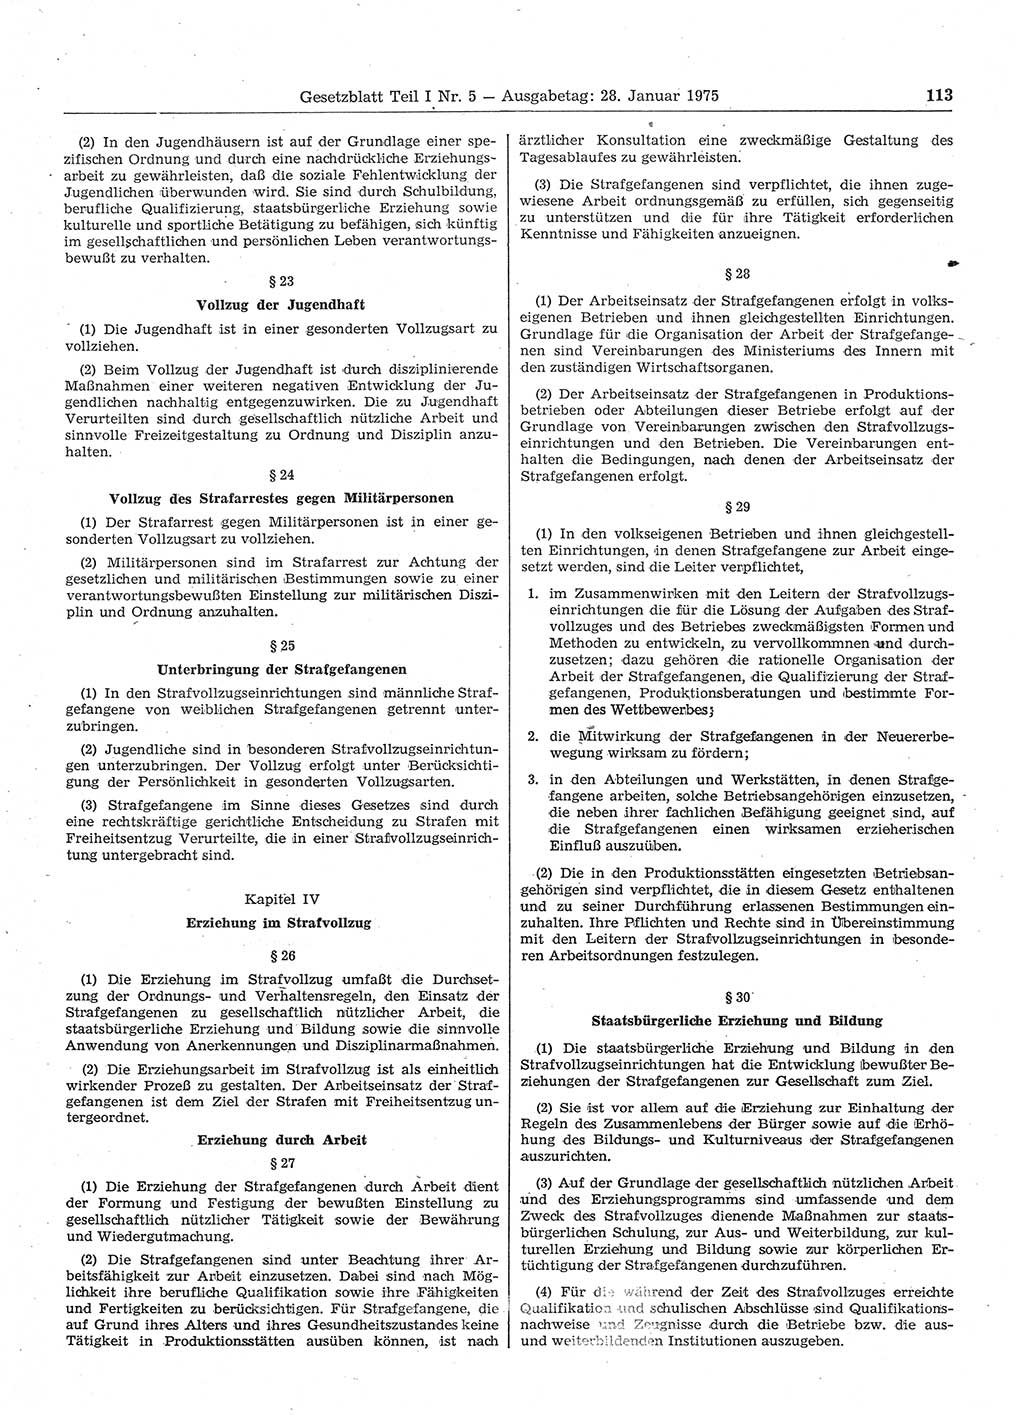 Gesetzblatt (GBl.) der Deutschen Demokratischen Republik (DDR) Teil Ⅰ 1975, Seite 113 (GBl. DDR Ⅰ 1975, S. 113)